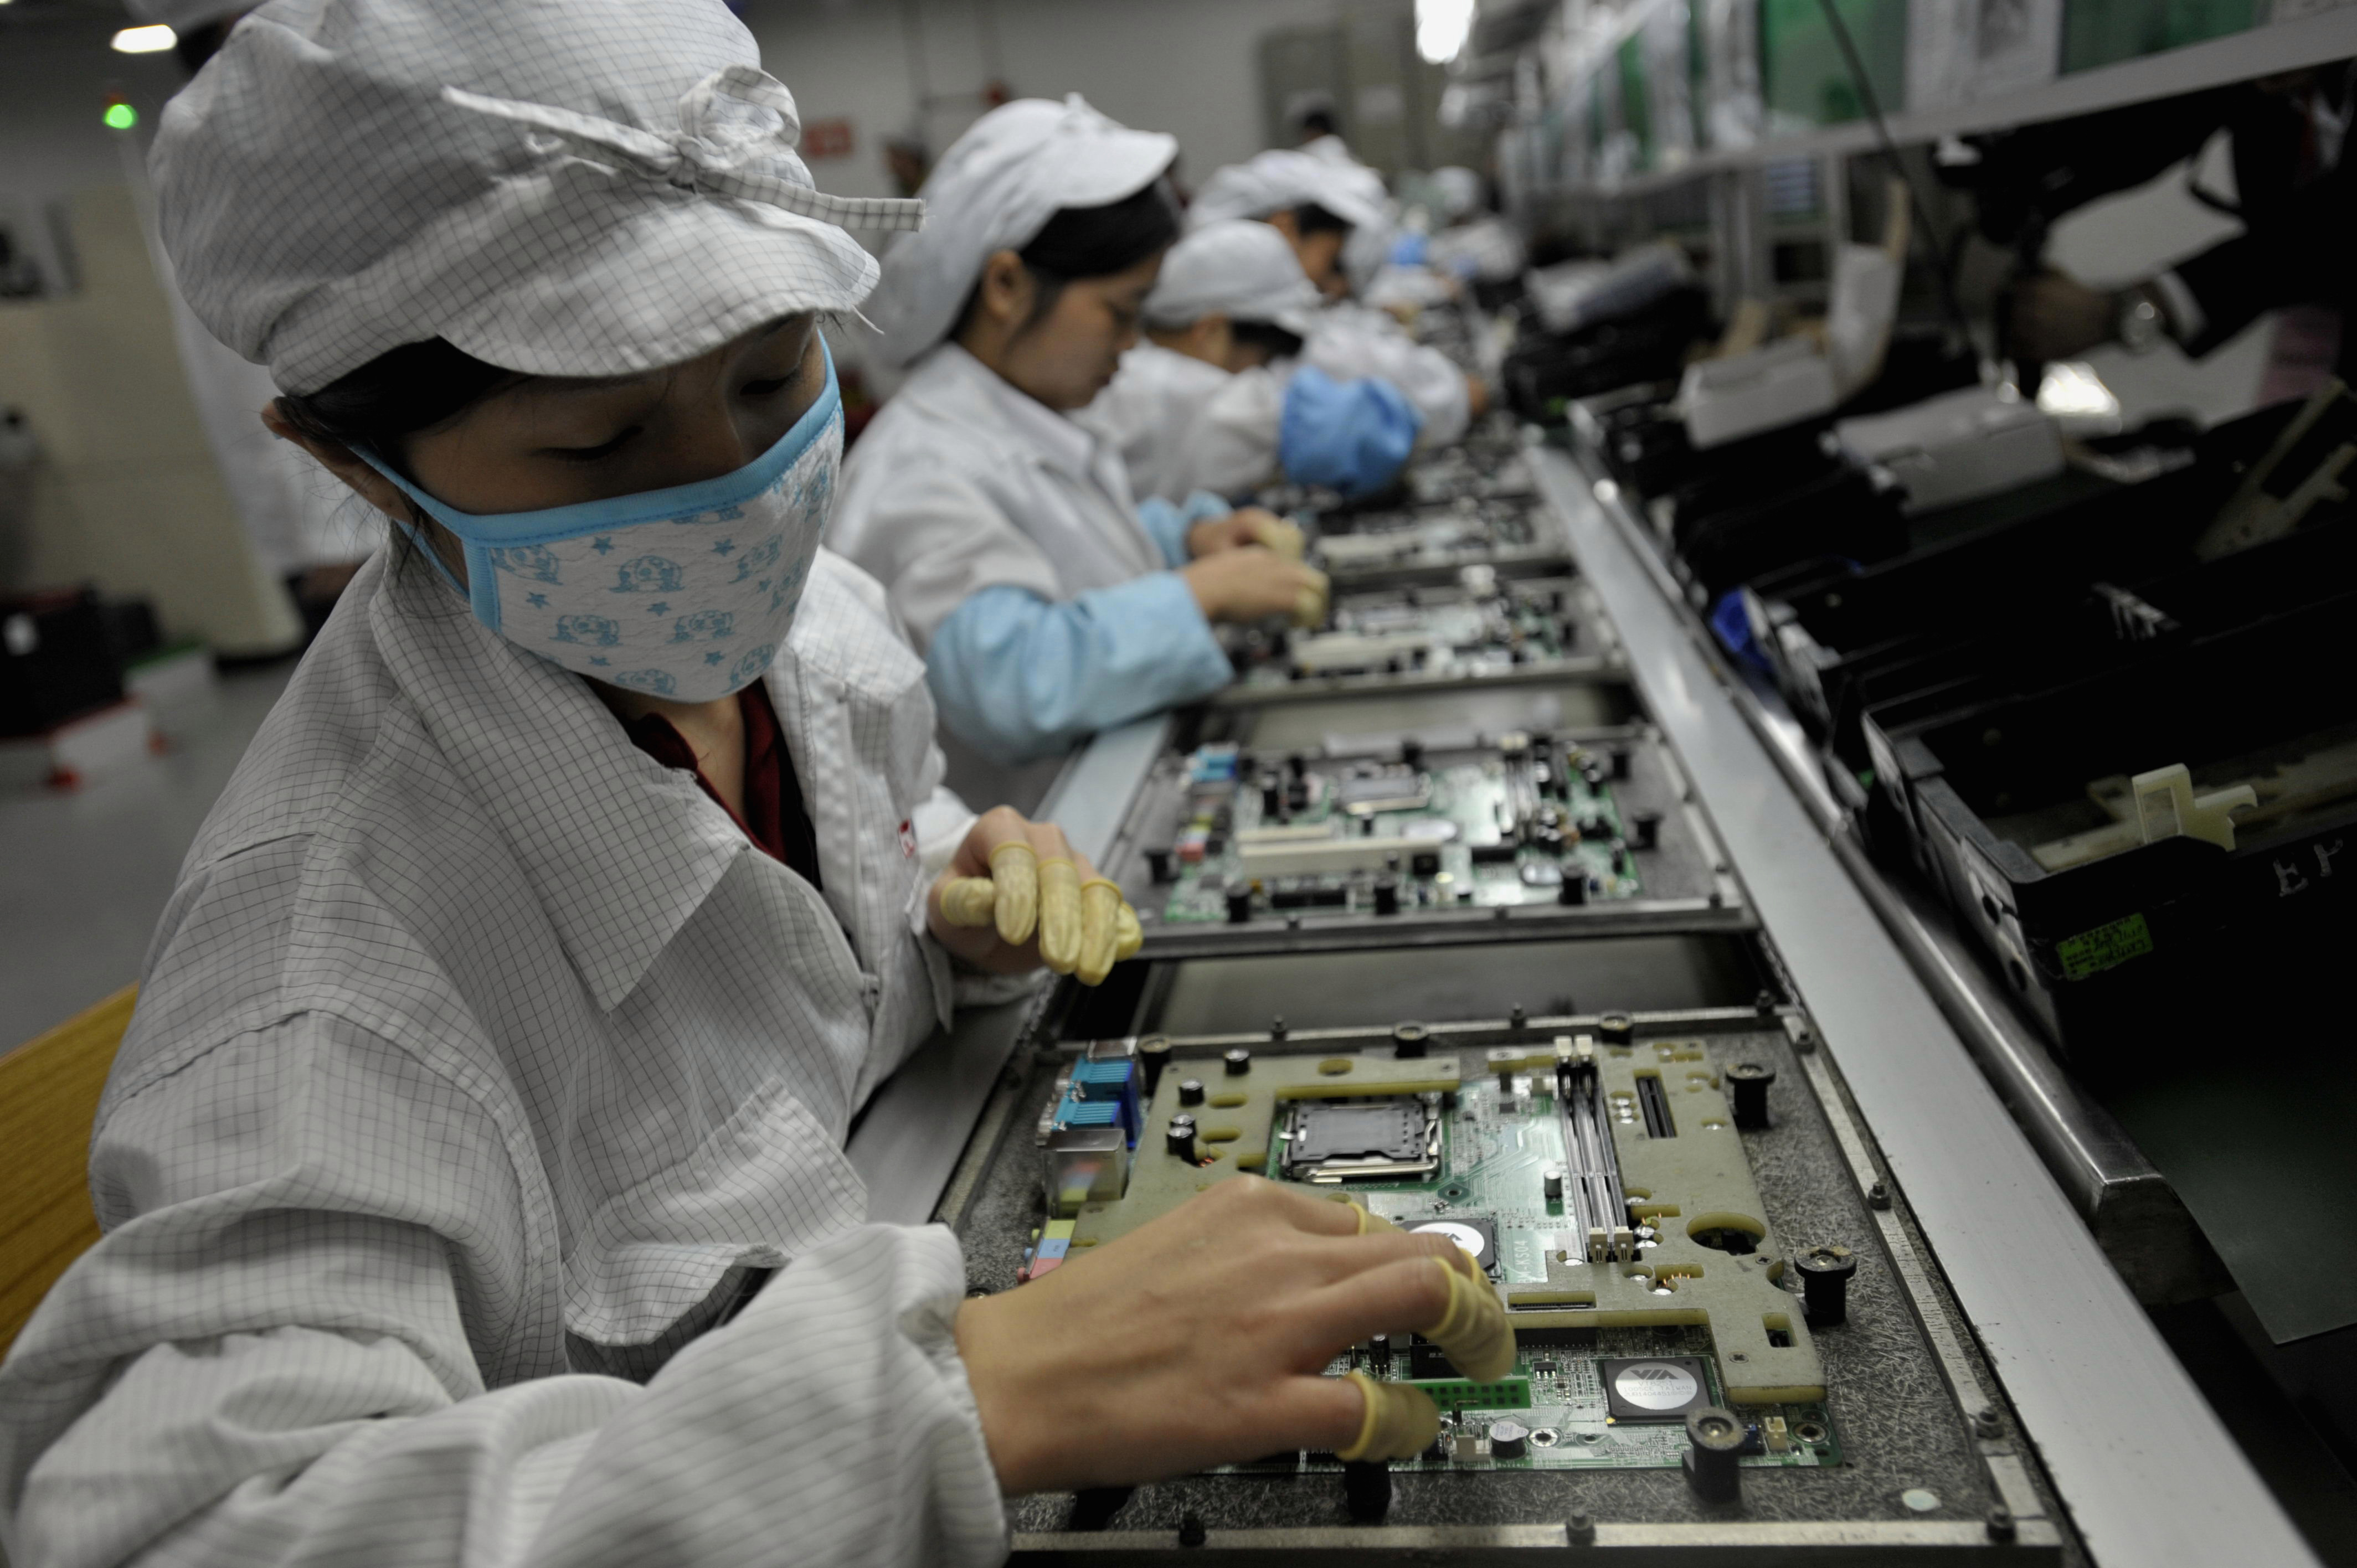                 Công nhân tại nhà máy Foxconn ở Trung Quốc. Theo báo cáo, một tổ chức từ thiện đã làm 